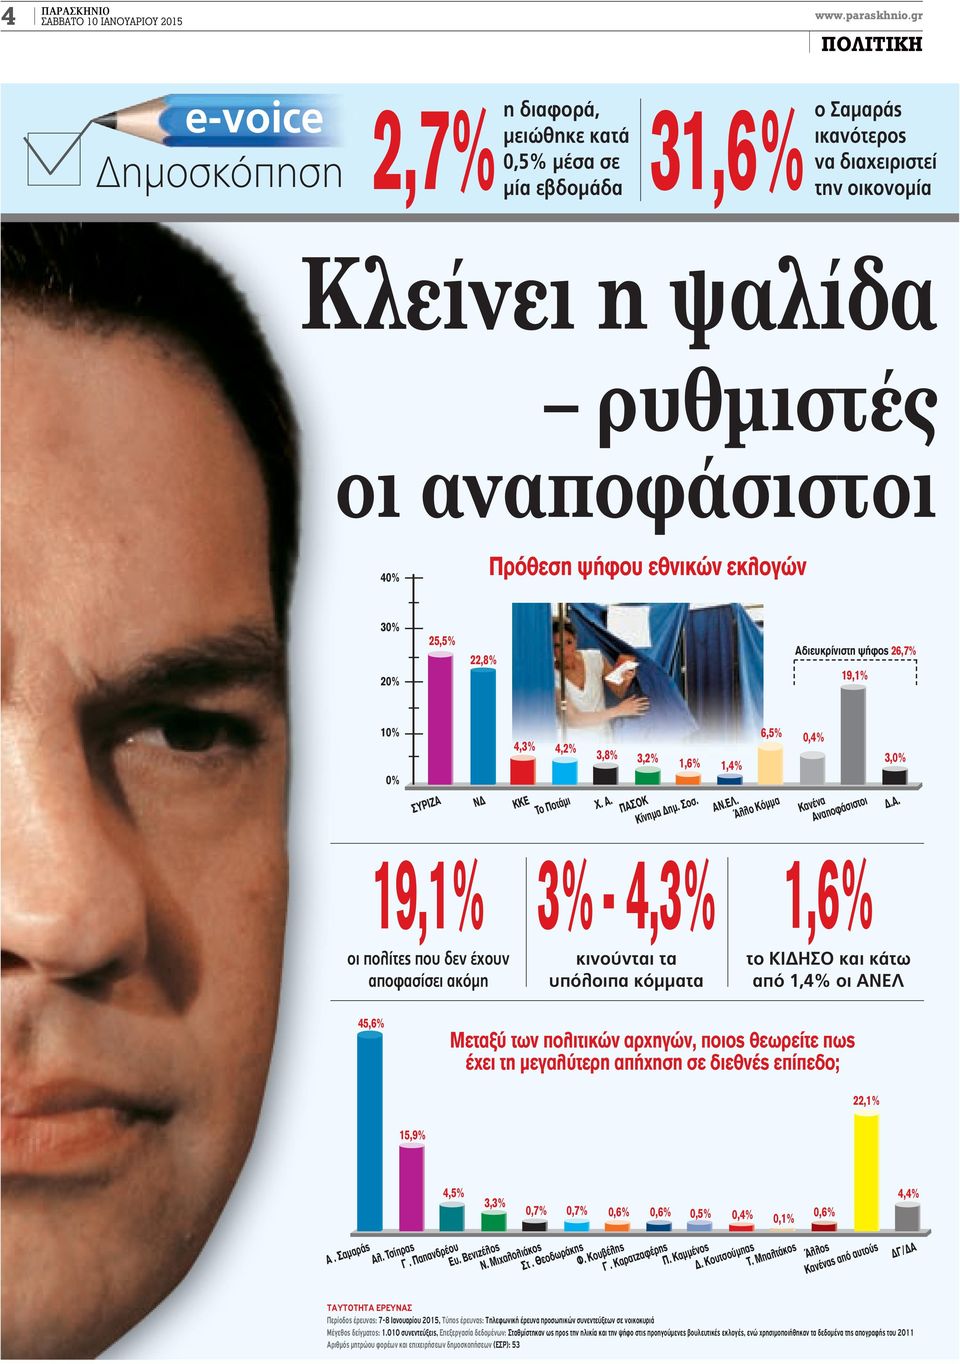 ψήφου εθνικών εκλογών 30% 20% 25,5% 22,8% Αδιευκρίνιστη ψήφος 26,7% 19,1% 10% 0% ΣΥΡΙΖΑ ΝΔ 19,1% οι πολίτες που δεν έχουν αποφασίσει ακόμη 4,3% 4,2% ΚΚΕ Το Ποτάμι 3,8% 3,2% Χ. Α. ΠΑΣΟΚ Κίνημα Δημ.